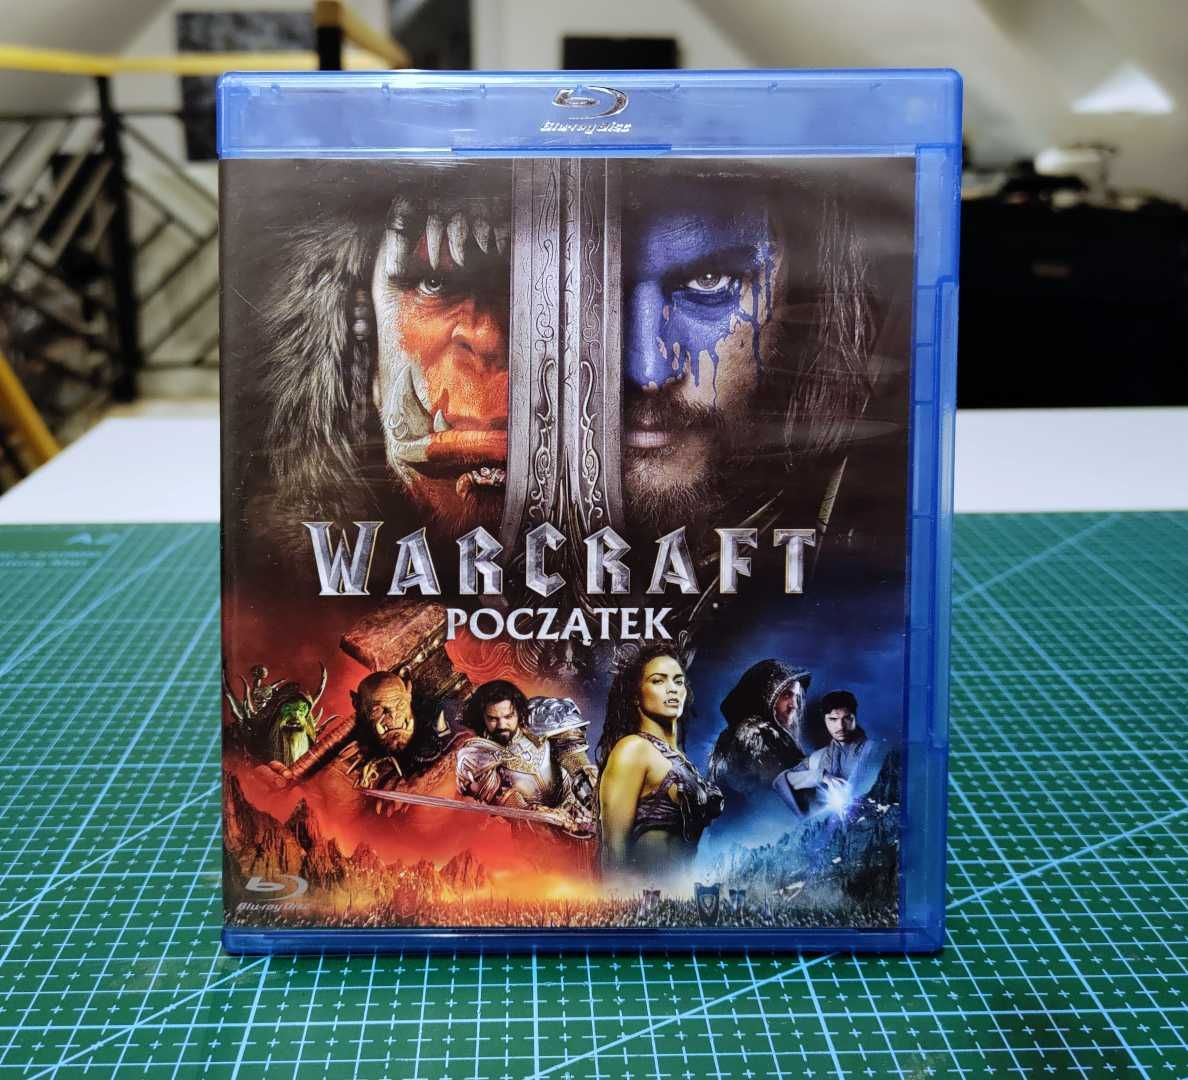 Warcraft - Początek (Blu-ray) Dubbing PL